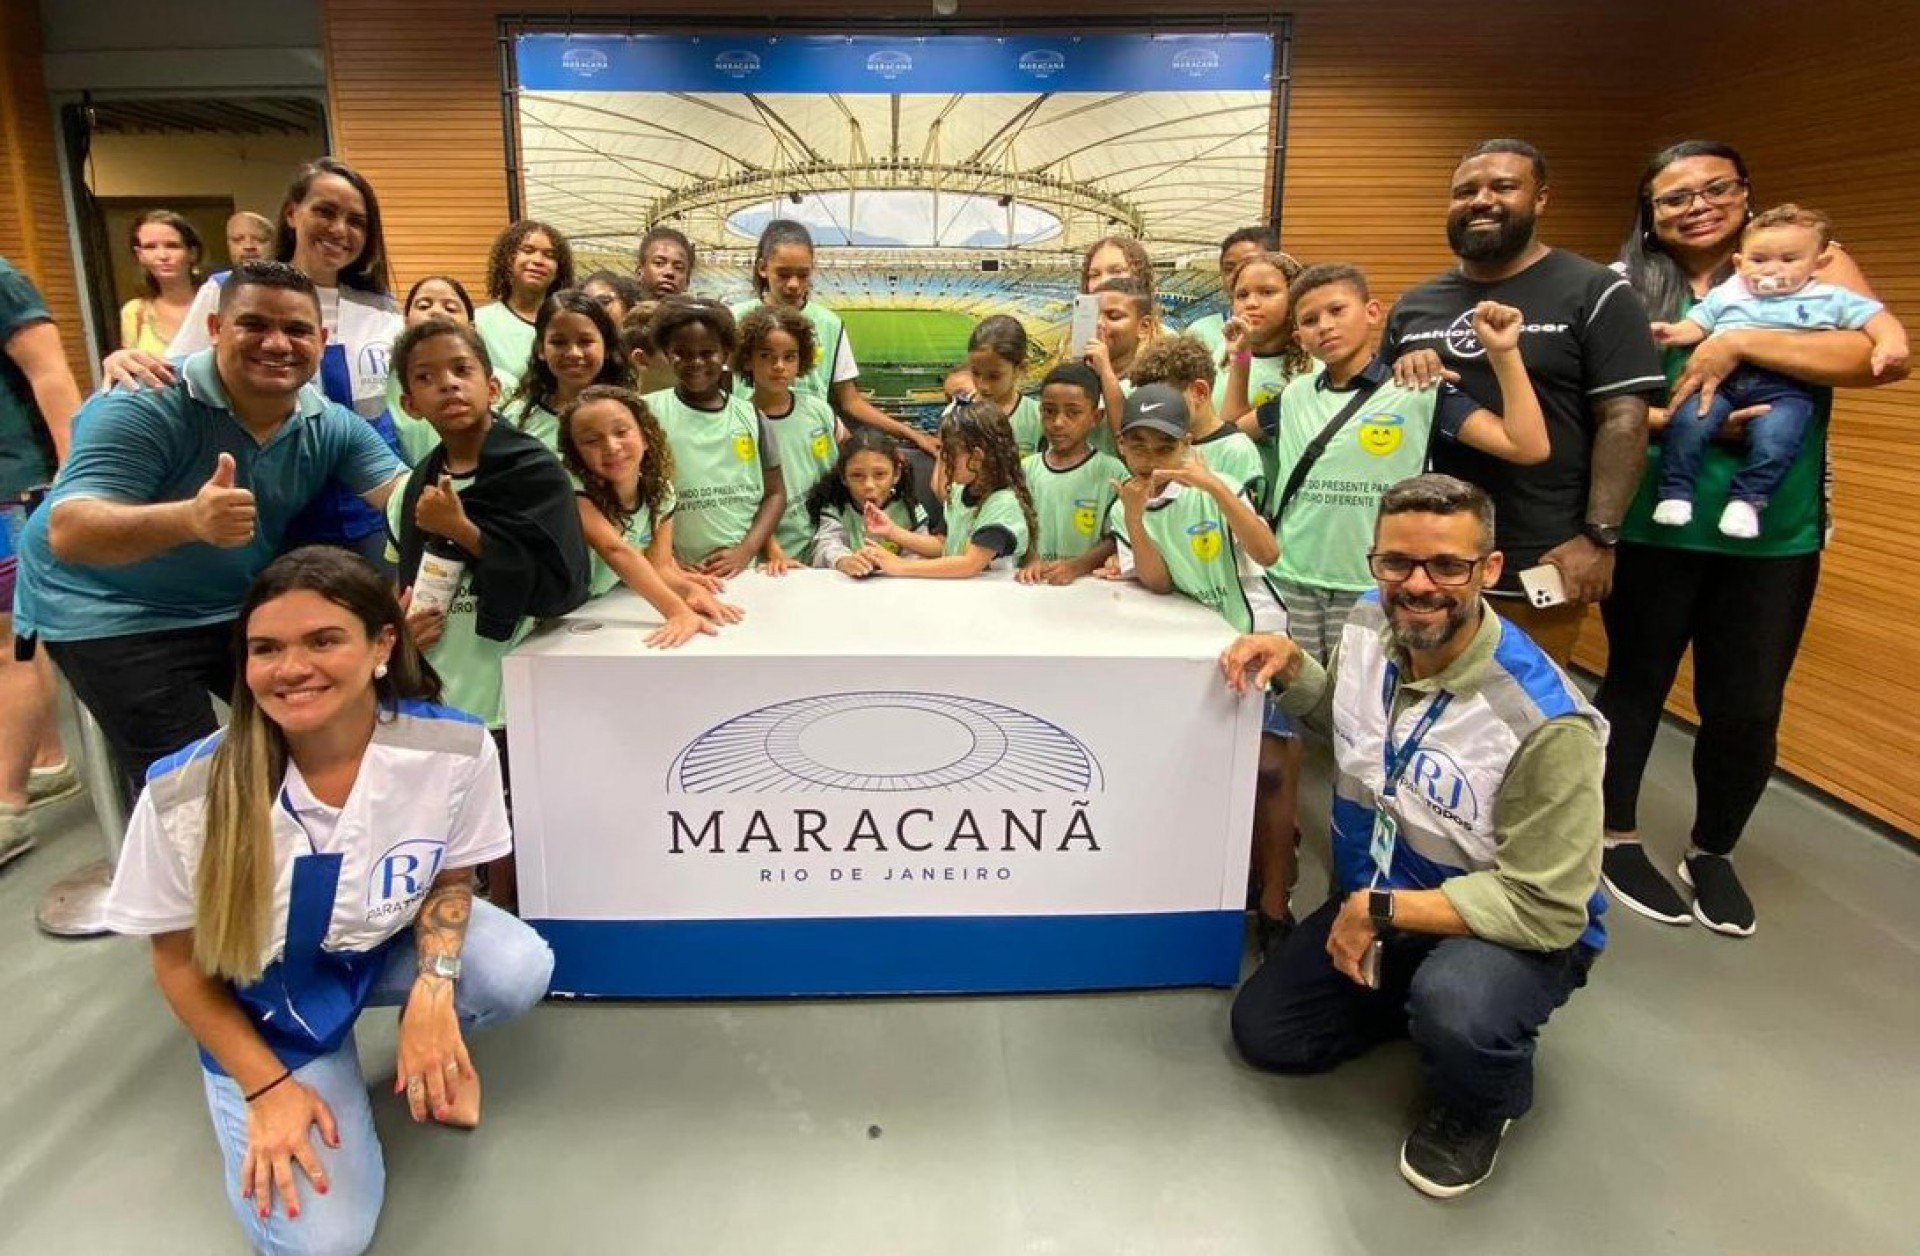 Na visita ao Maracanã, as crianças conheceram diversos espaços dentro do estádio - Divulgação